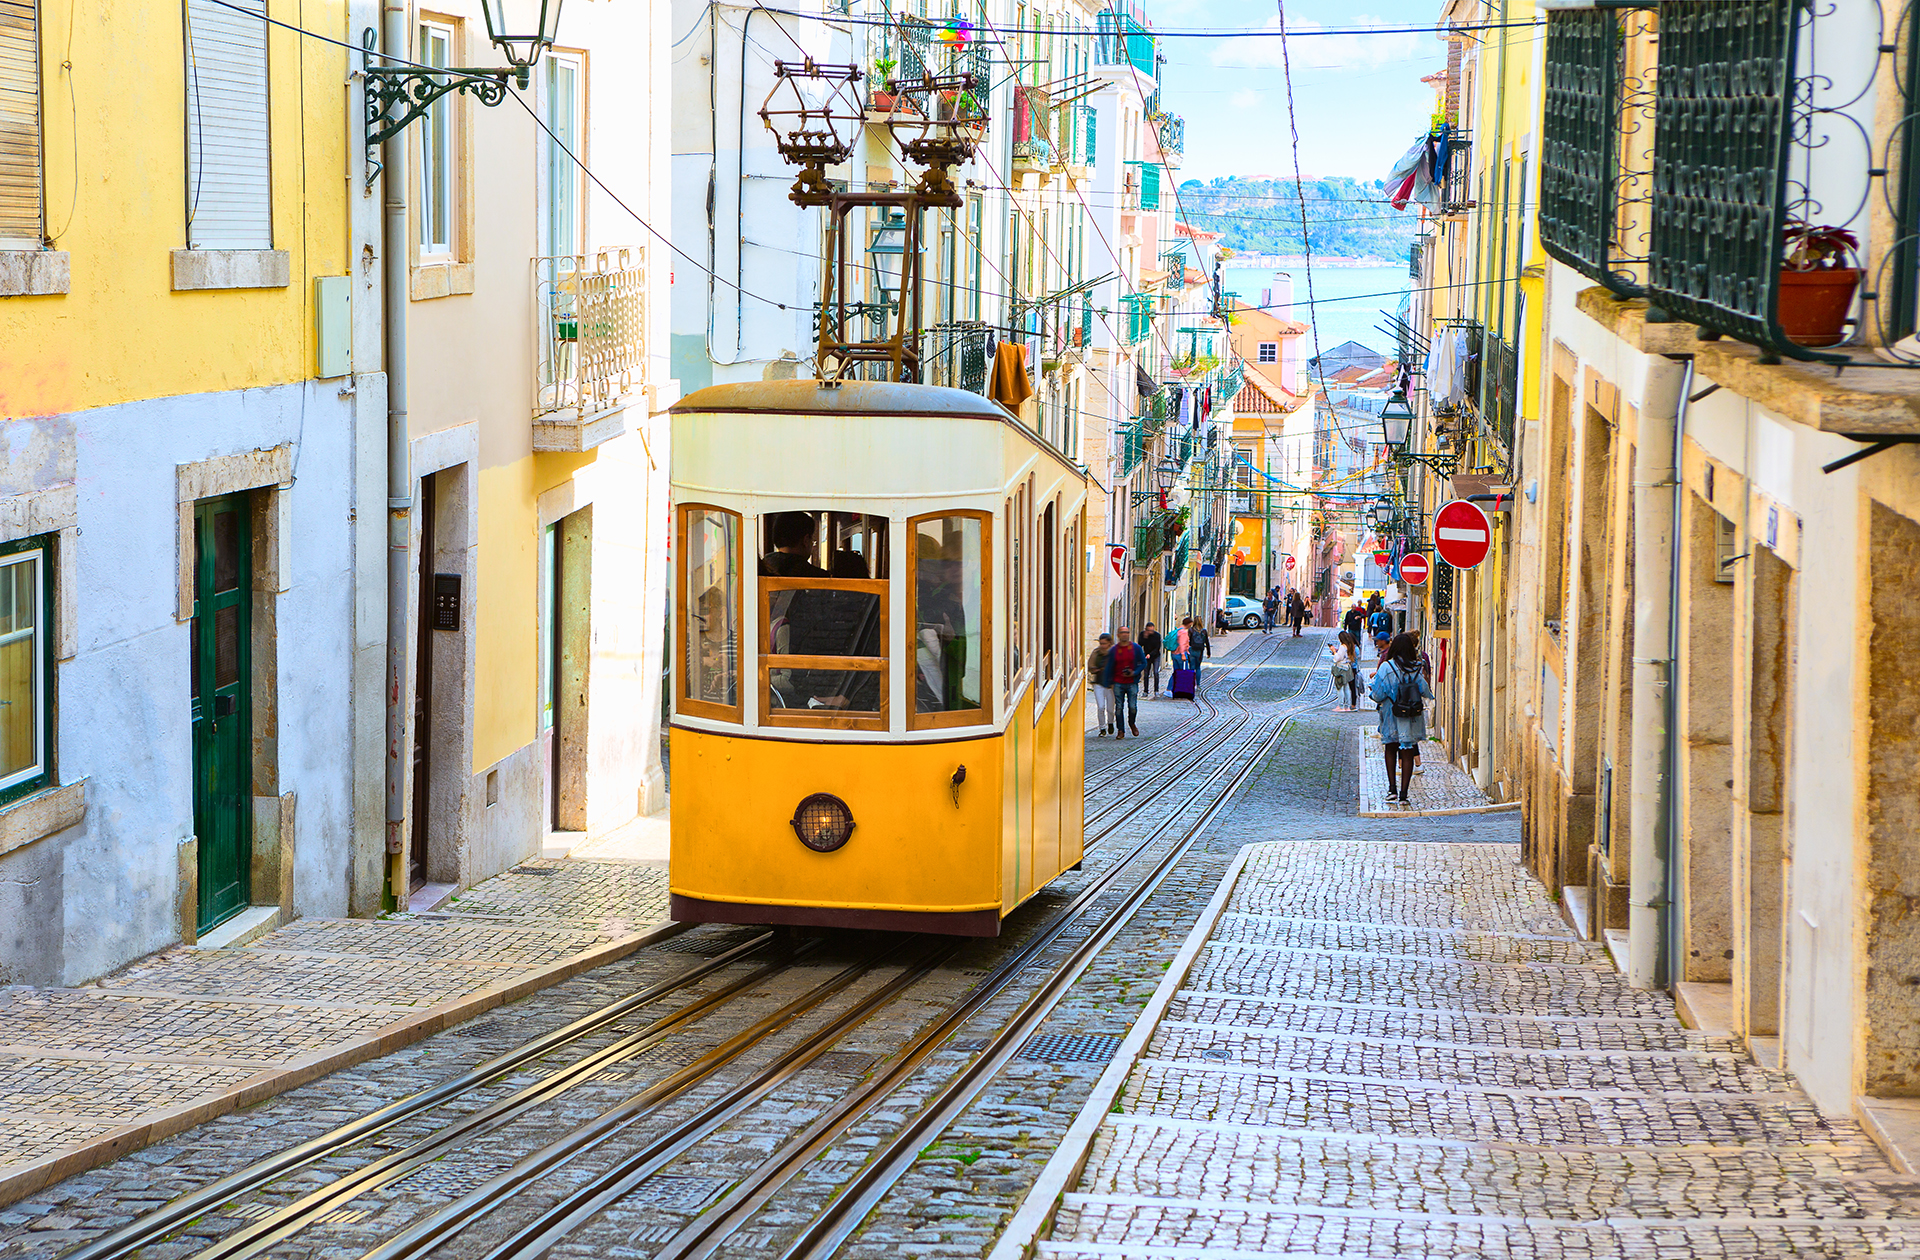 Lisboa saltó del puesto 14 al 4 en la lista este año debido a una caída de precios interanual del 8,4%